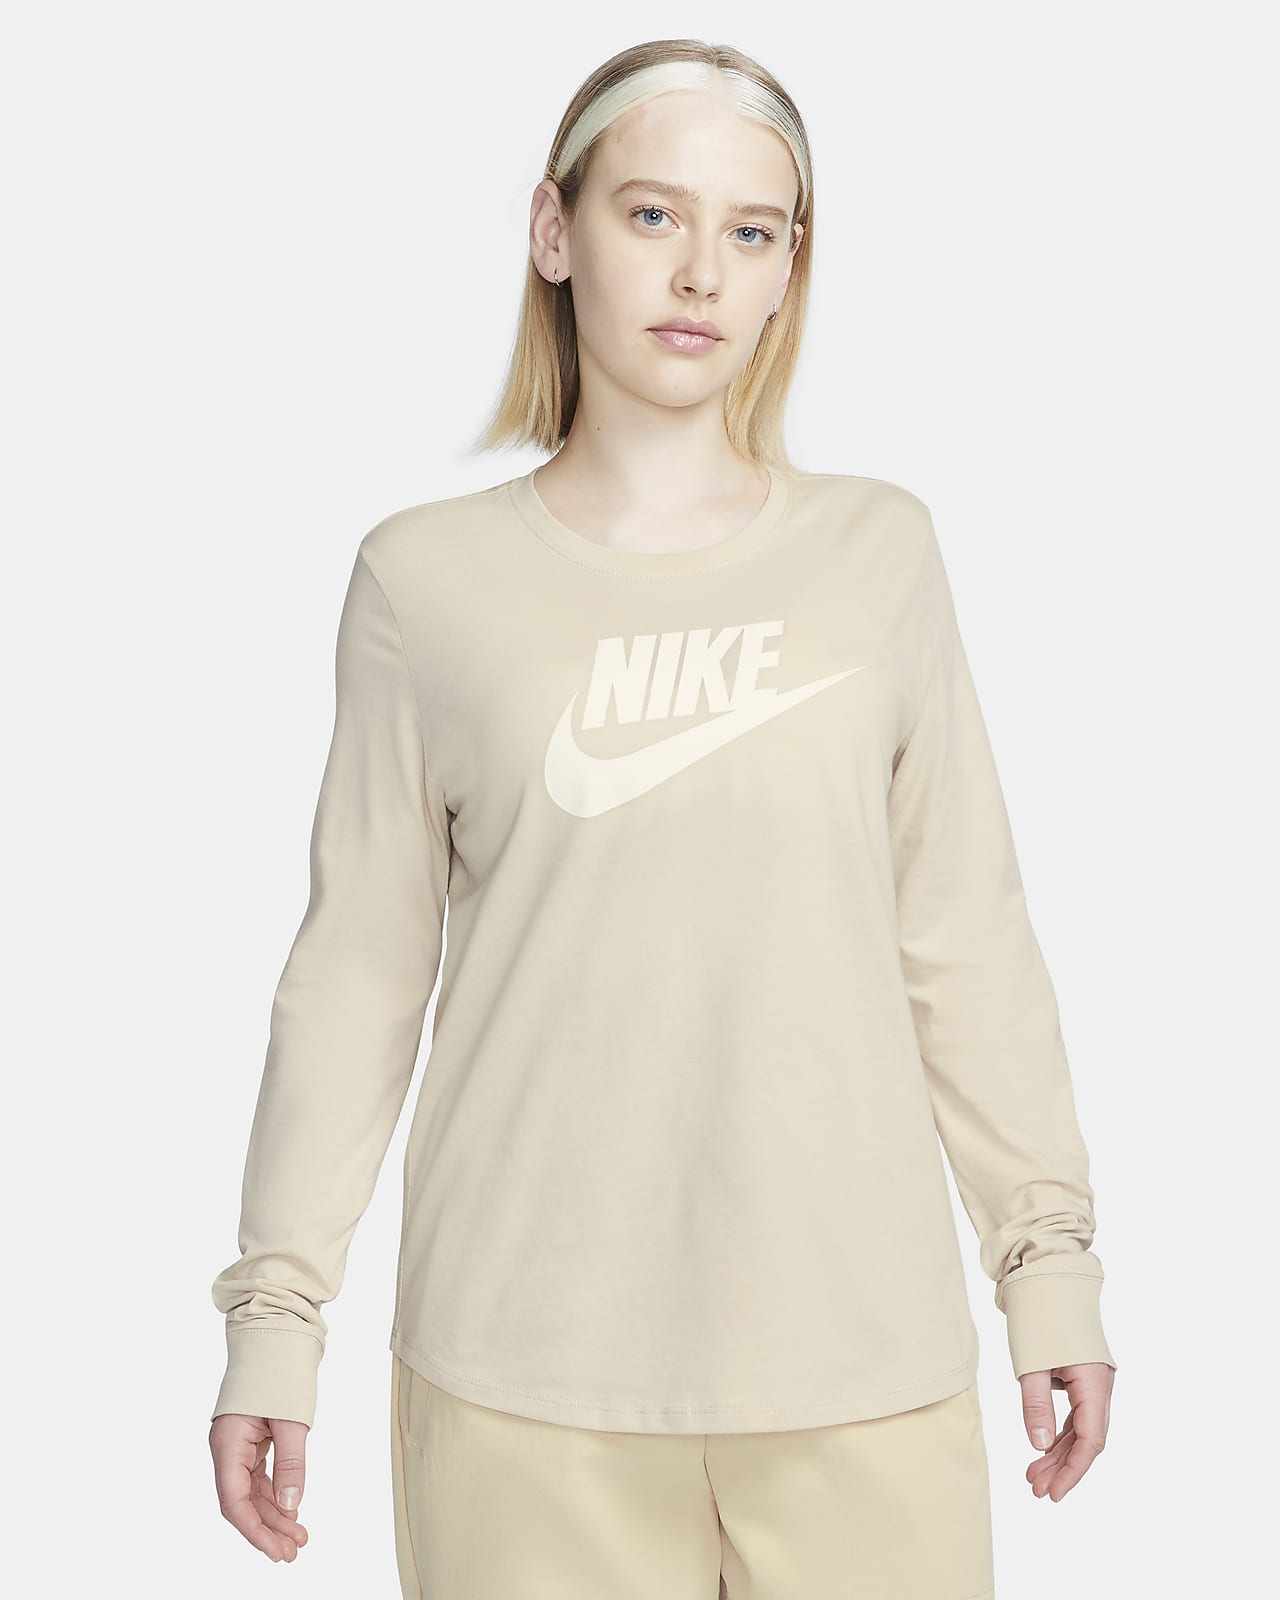 Nike Sportswear Women's Long-Sleeve Logo T-Shirt. Nike.com